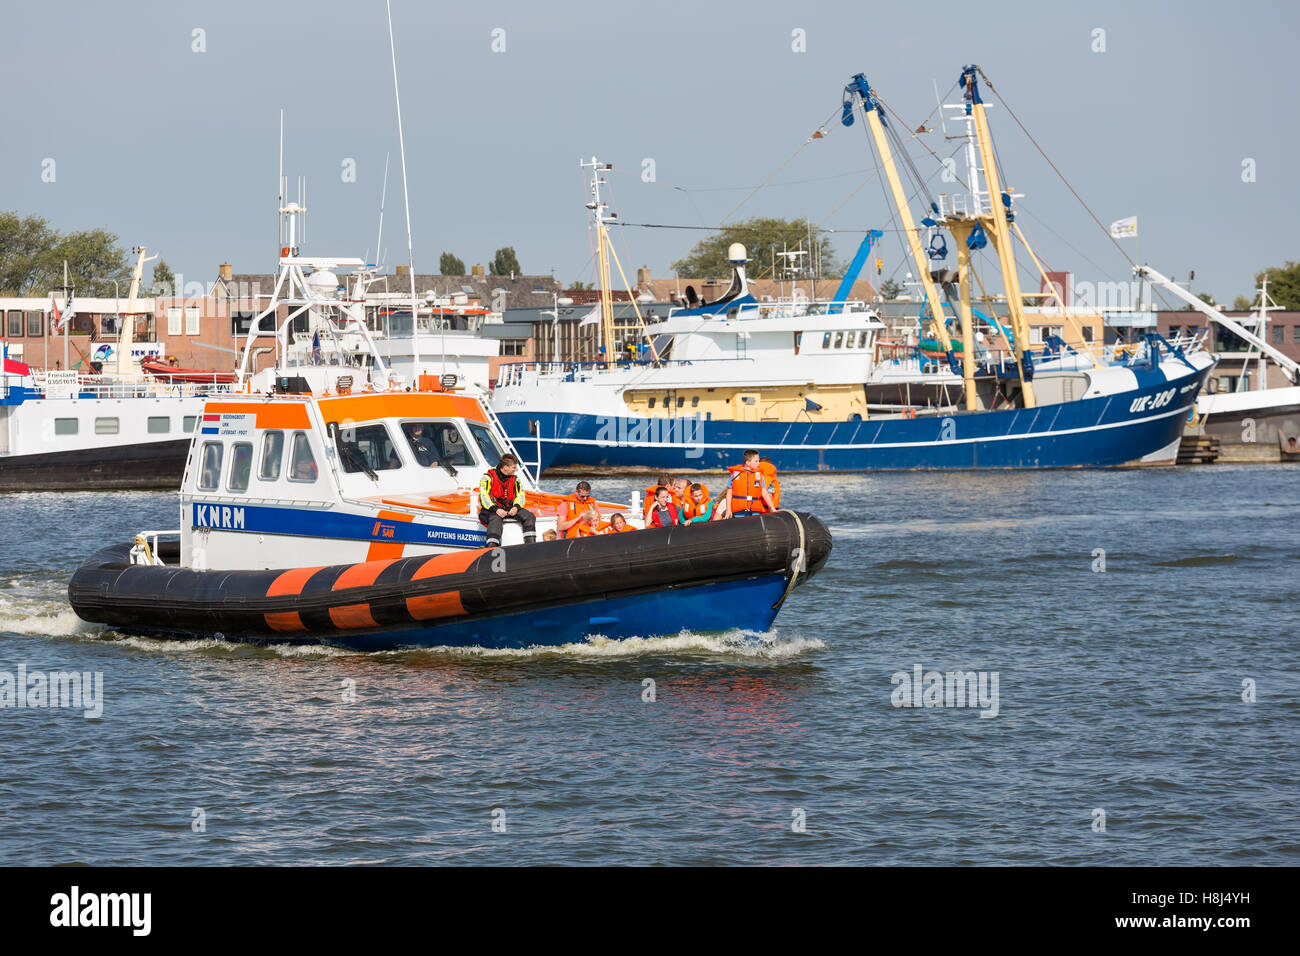 Unbekannte Menschen machen eine Bootsfahrt auf einem rettungsboot Demonstration im Hafen von Urk, Niederlande Stockfoto